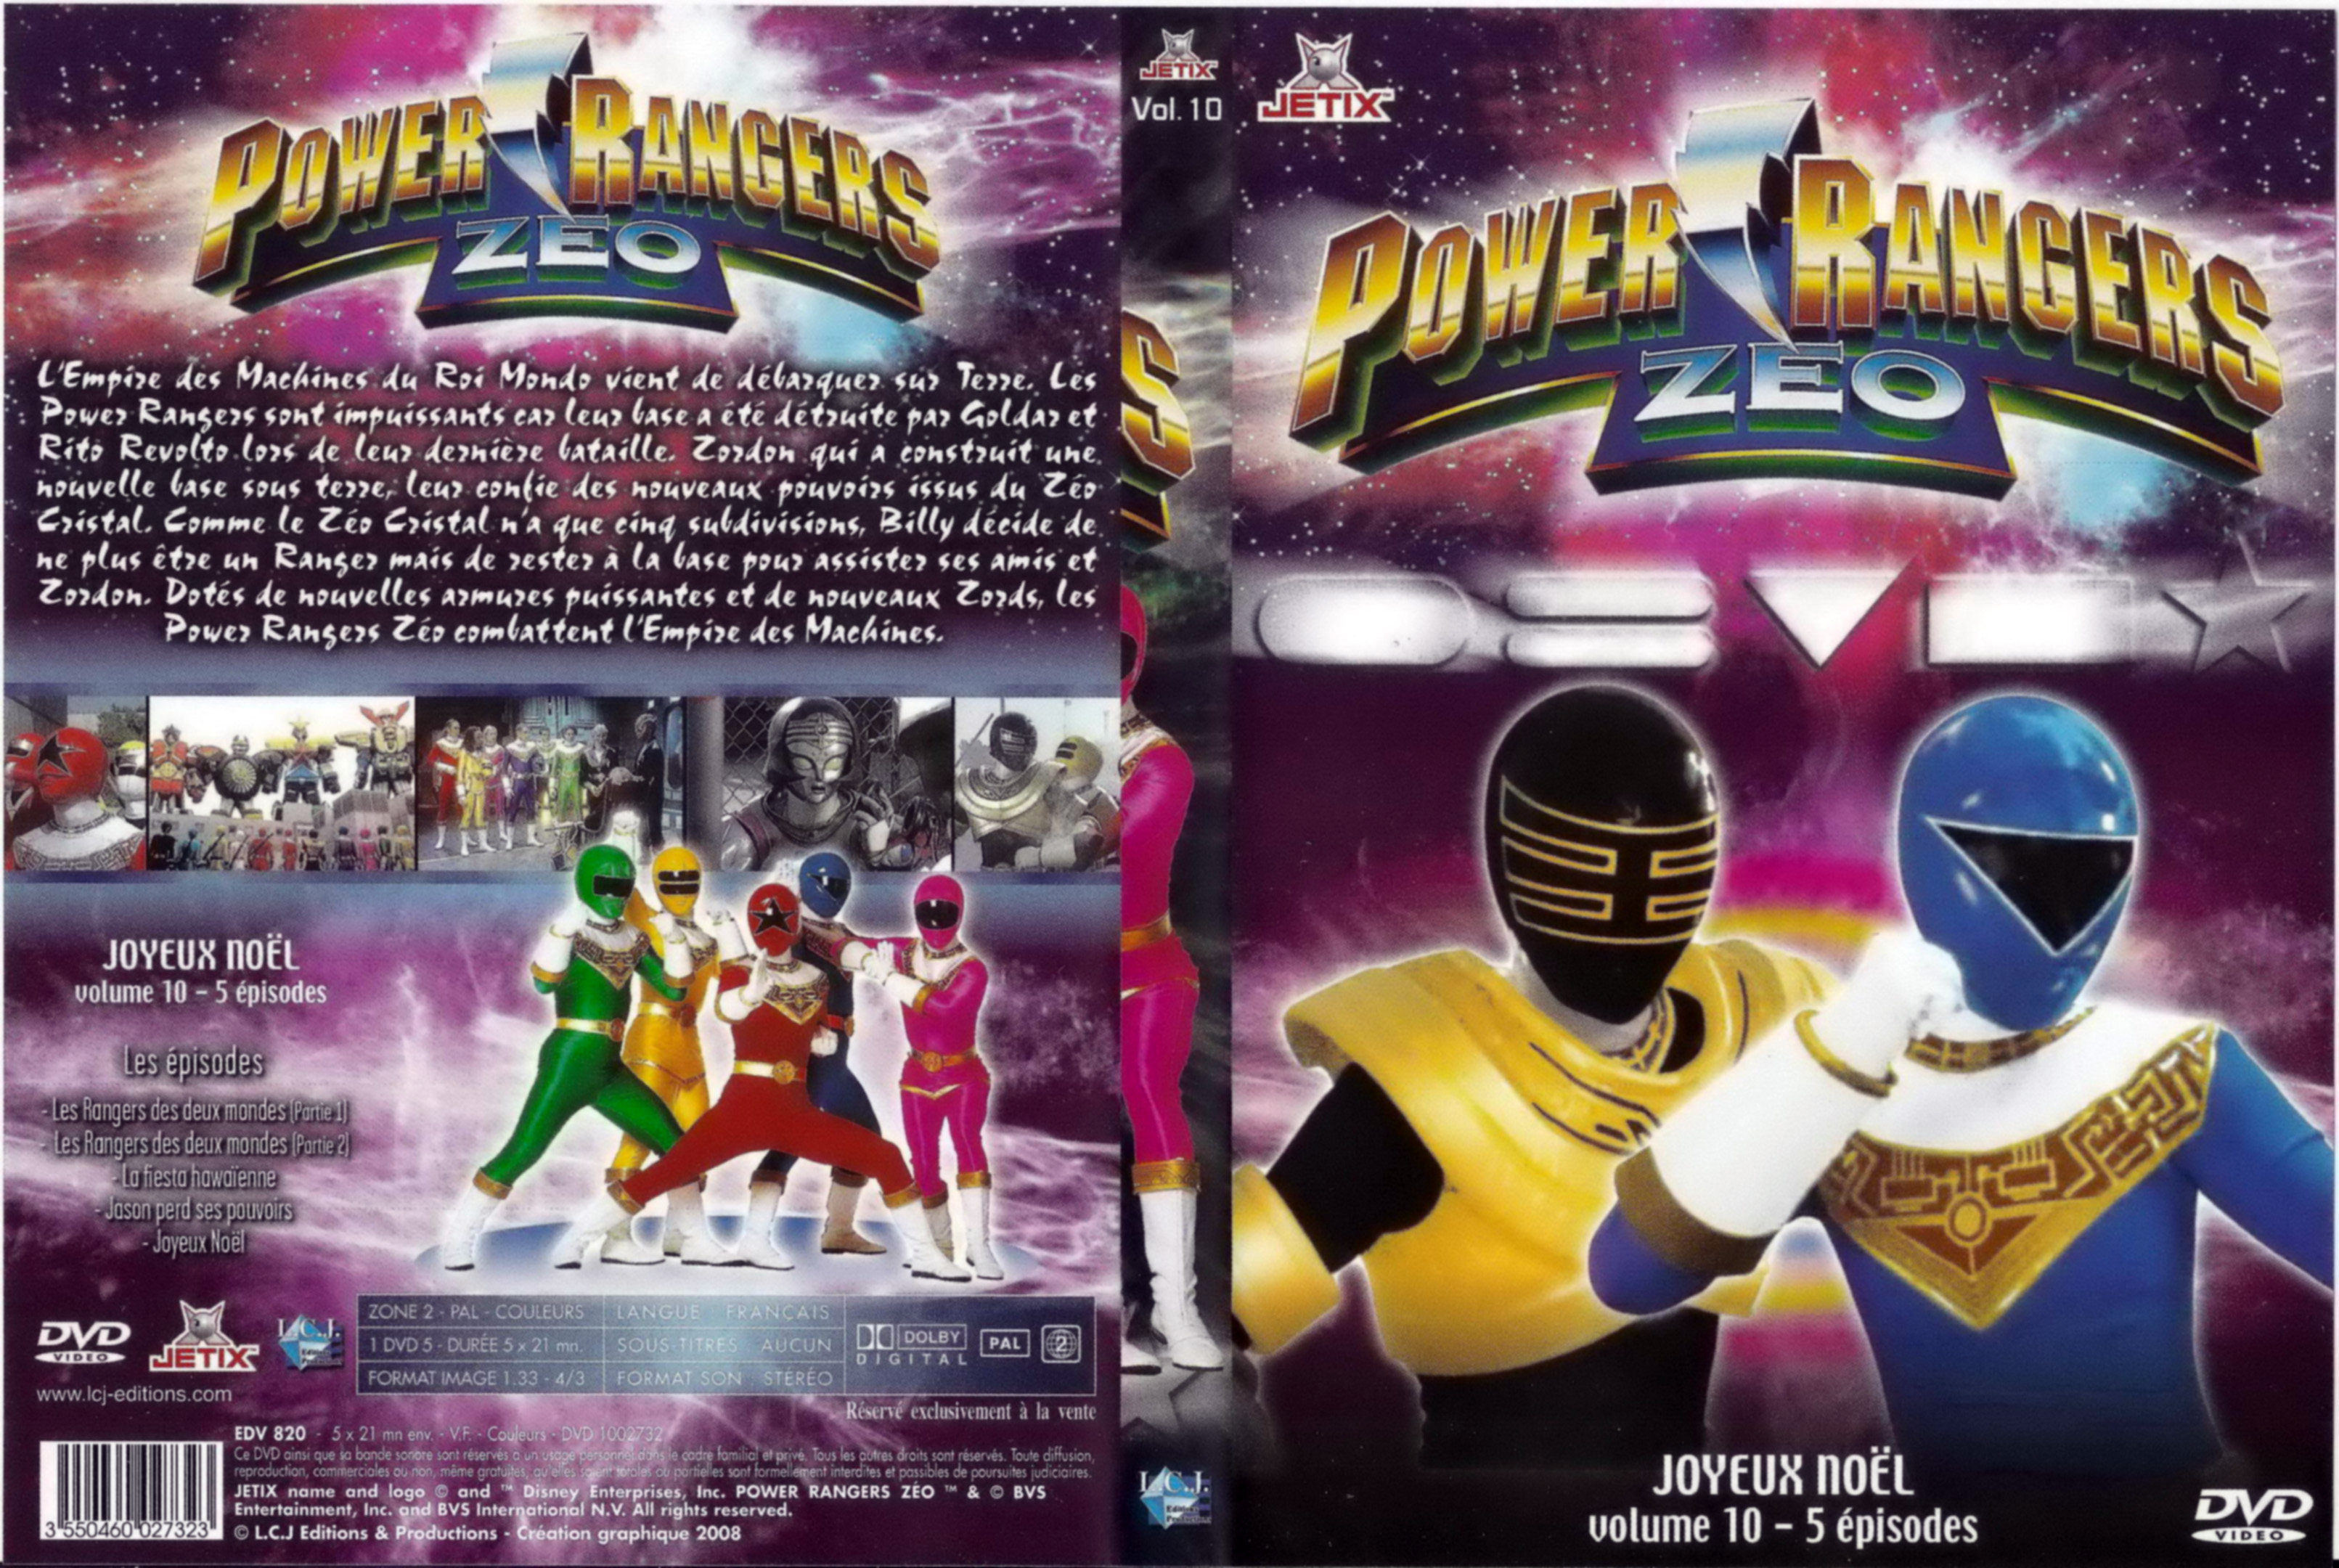 Jaquette DVD Power rangers zeo vol 10.